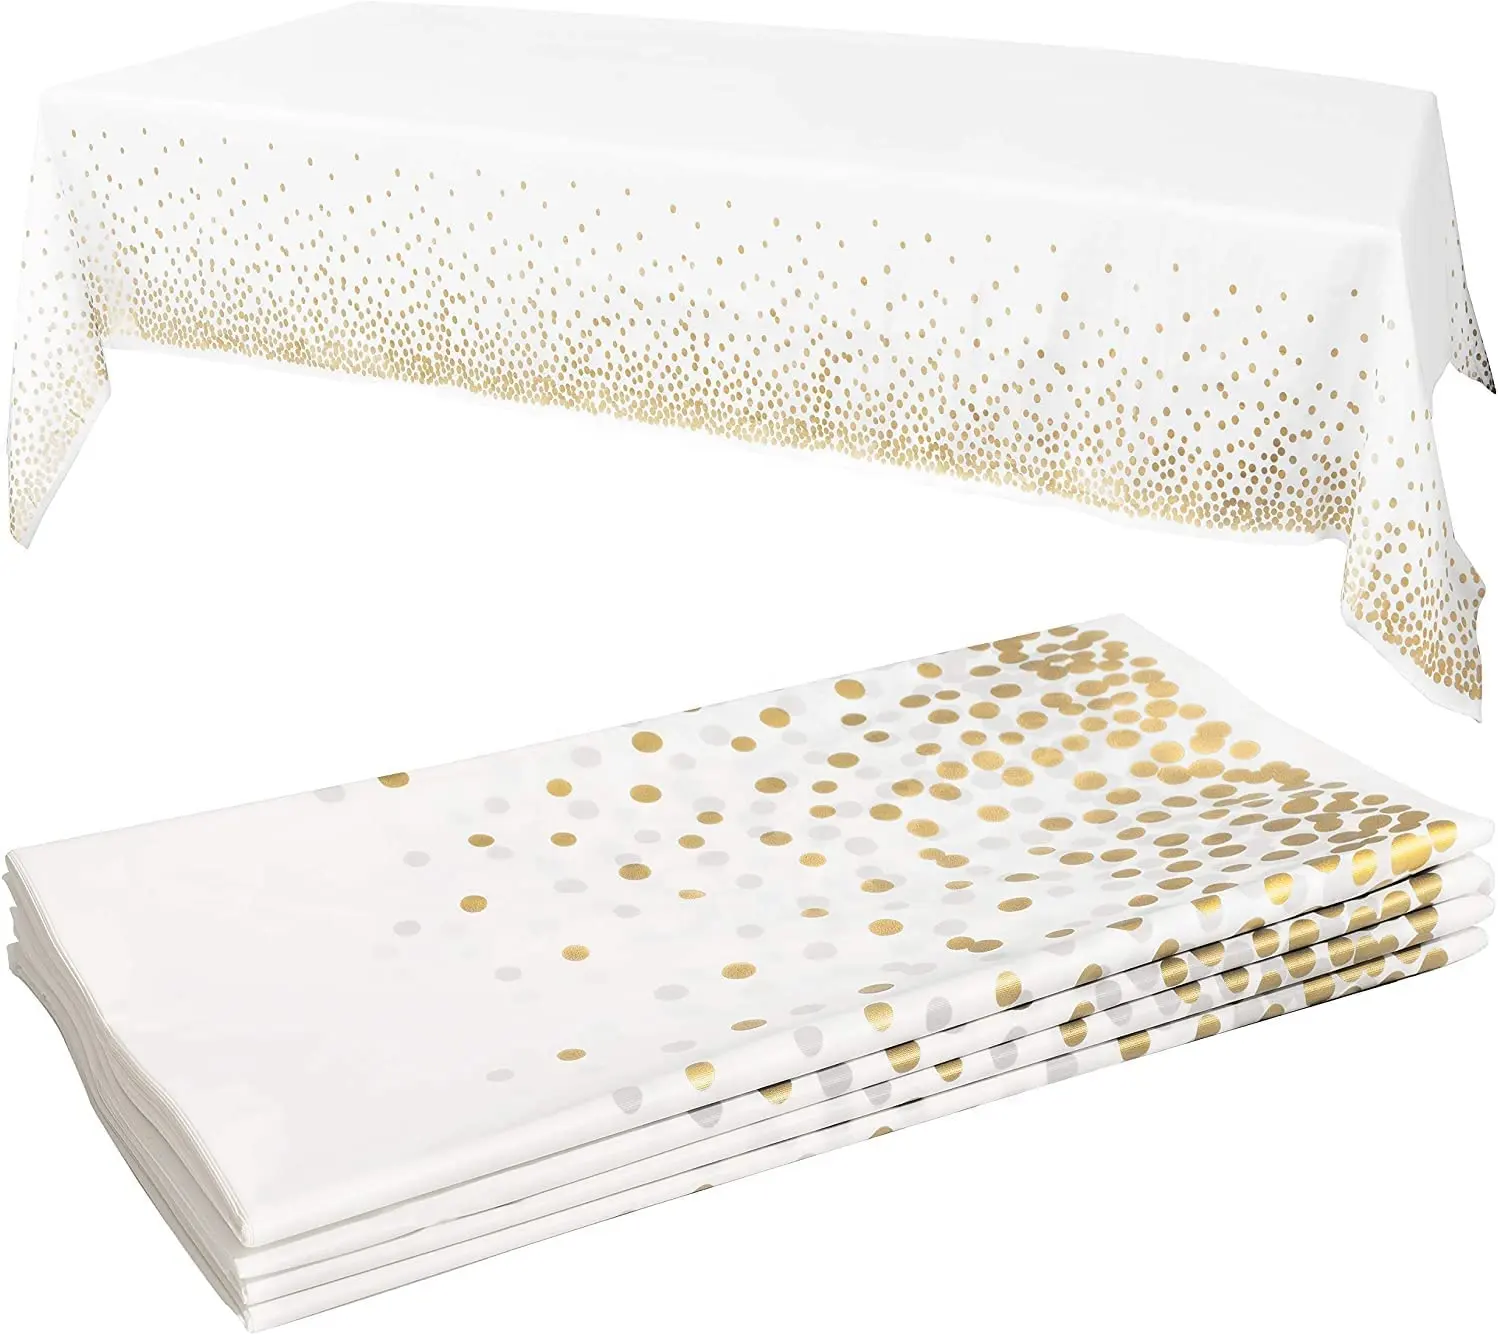 Tovaglia bianca/oro di alta qualità tovaglie usa e getta tovaglia in plastica tovaglia per feste